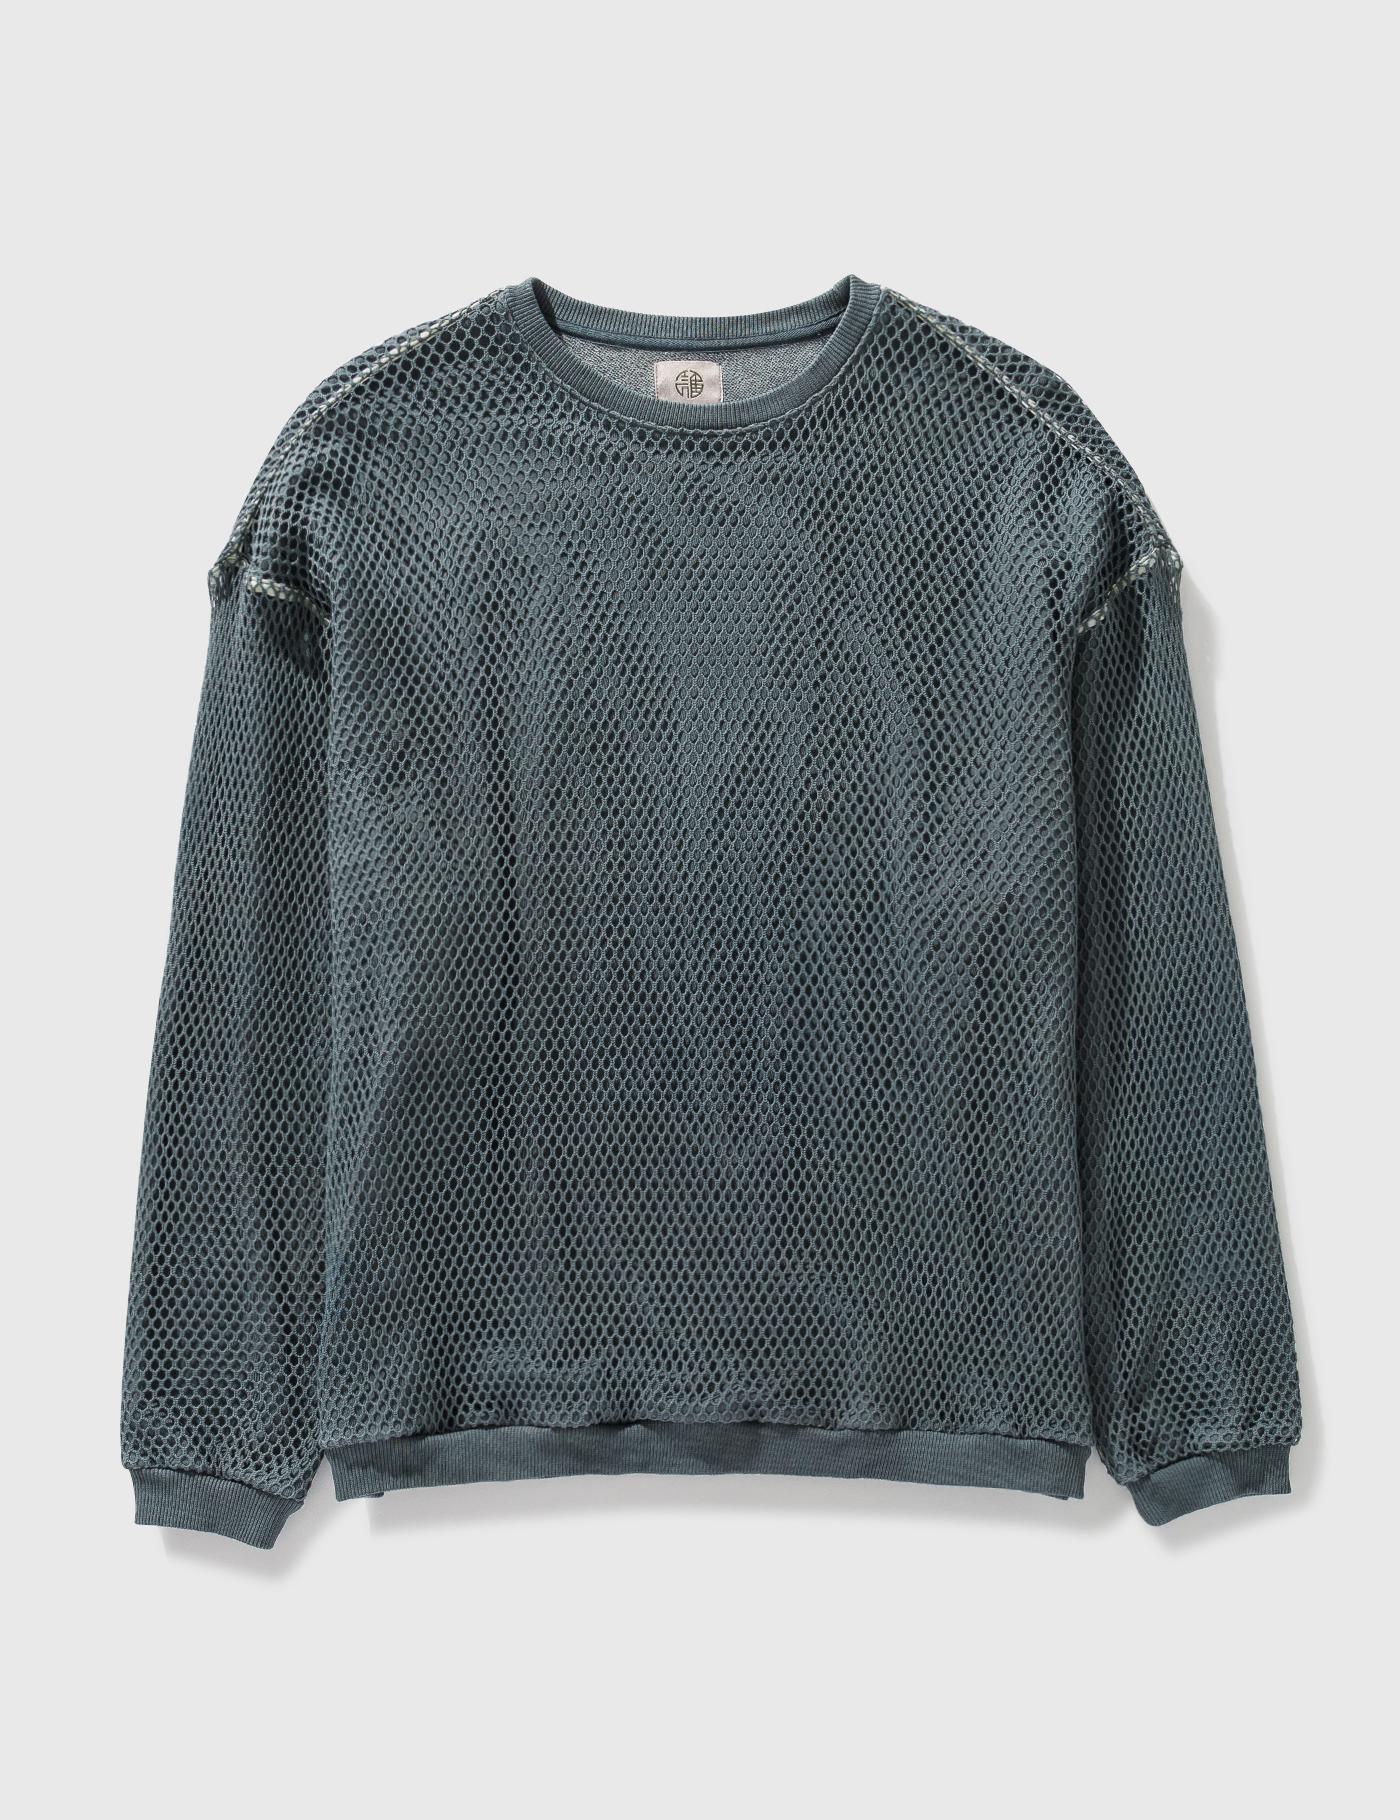 Hand Garment Dye Net Sweatshirt by DARENIMO